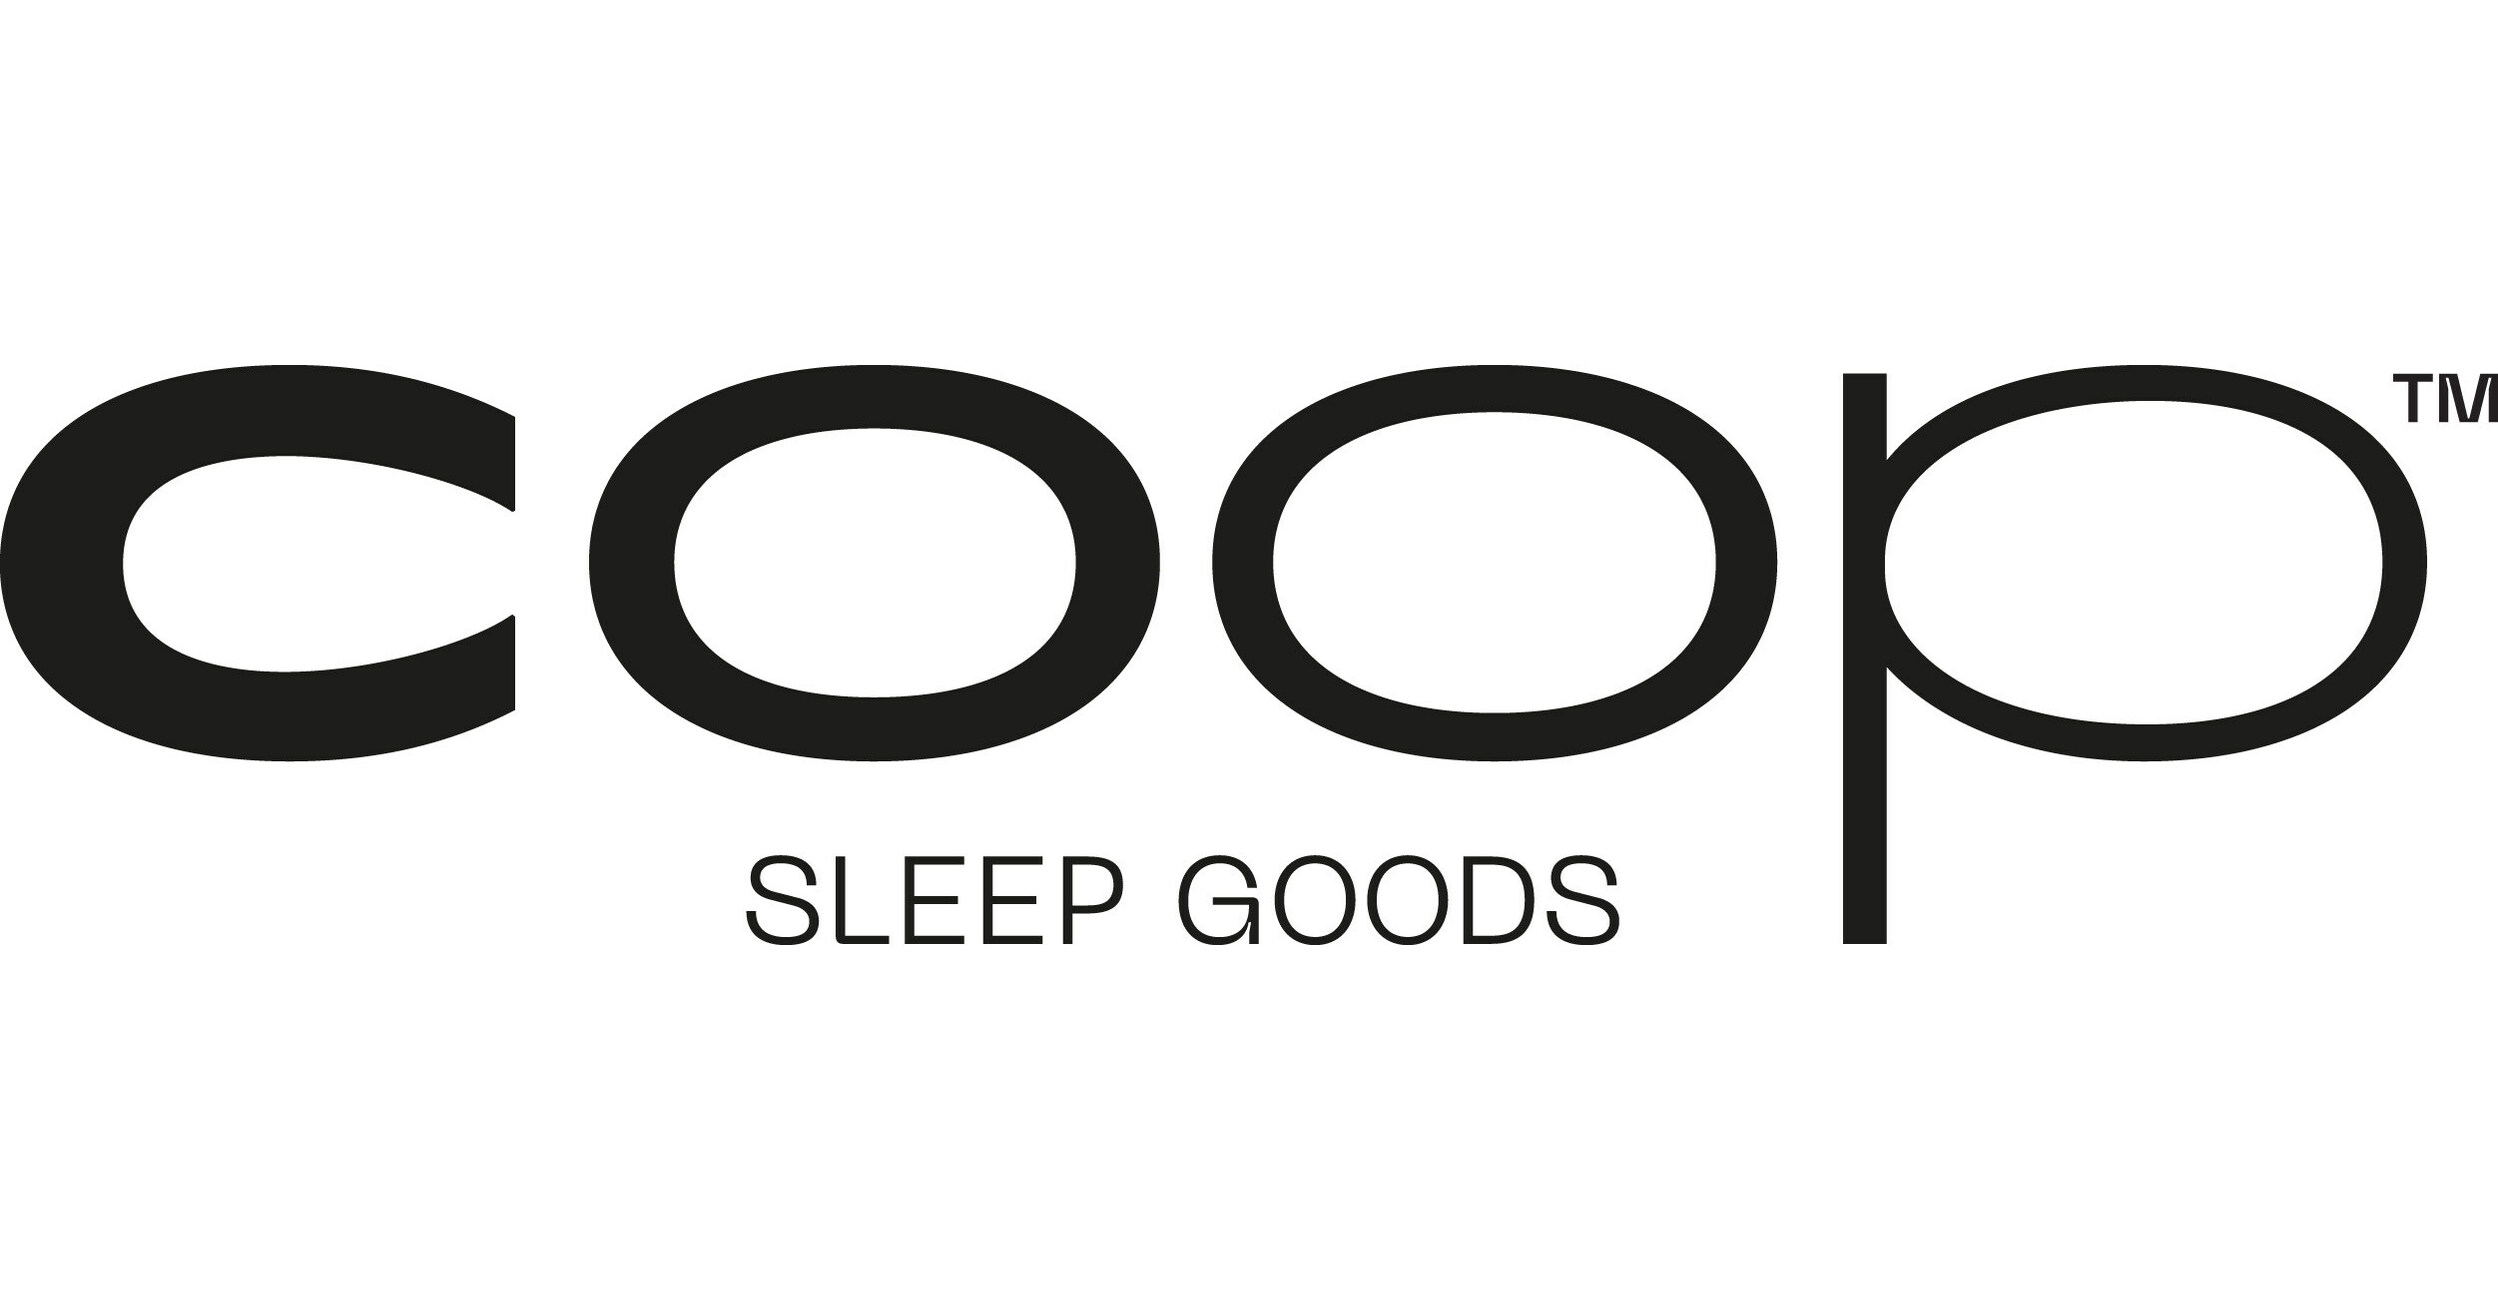 Coop Sleep Goods Original Pillow Tops Consumer Reports' Best Pillows of